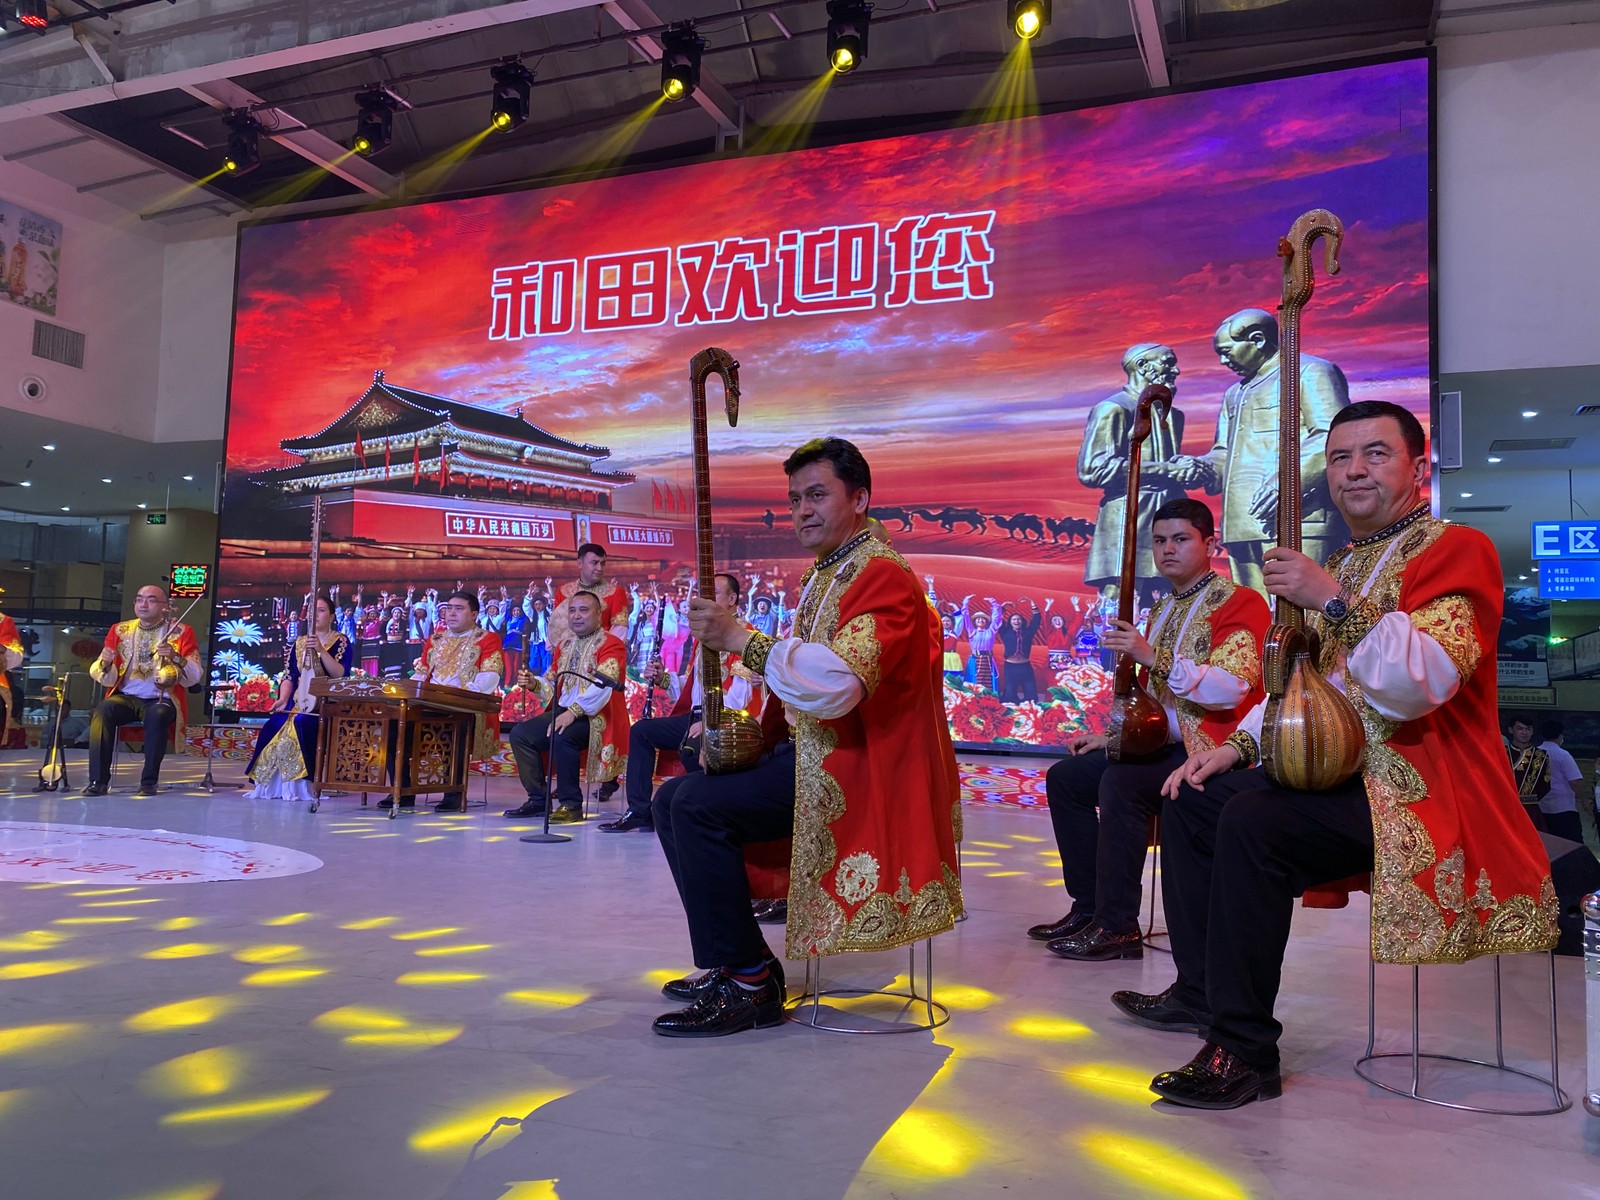 Nos espetáculos de dança uigur, a mensagem oficialé de preservação da culturatradicional, mas com umaimagem de Mao Tsé-tung aofundo e músicas do nacionalismo chinêsAgência O Globo